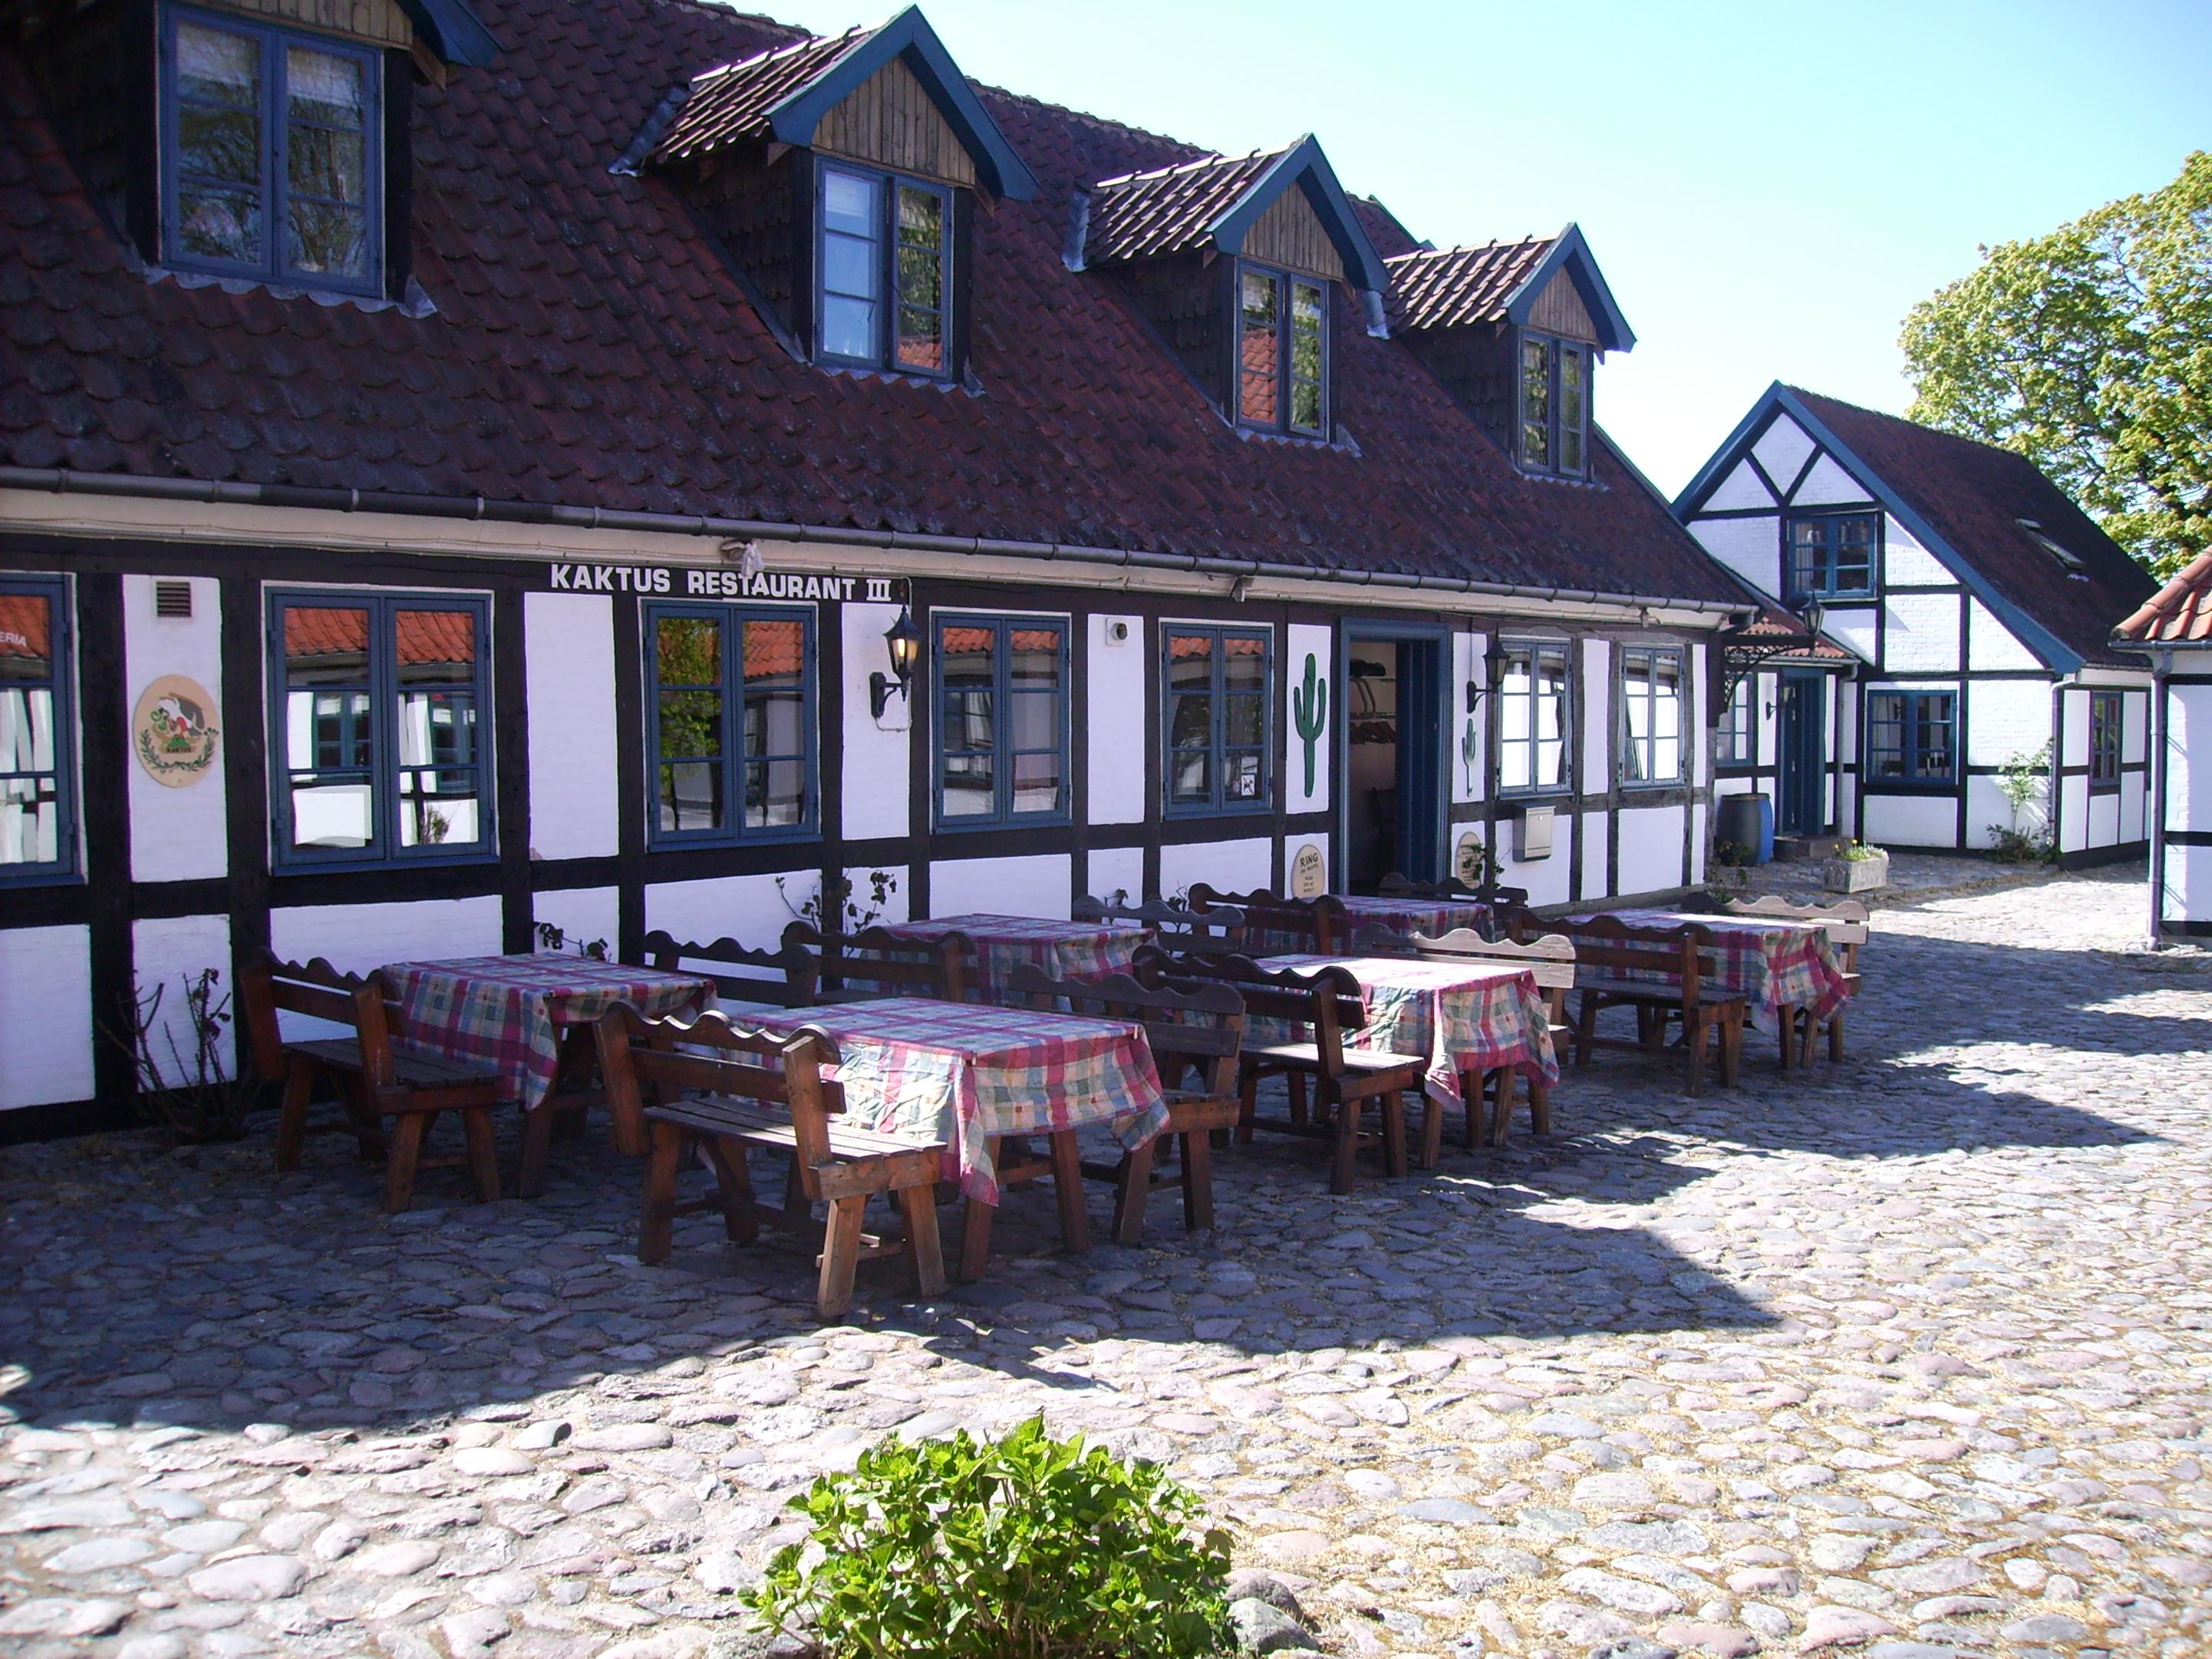 Billede af restauranten beliggende inde i gården.